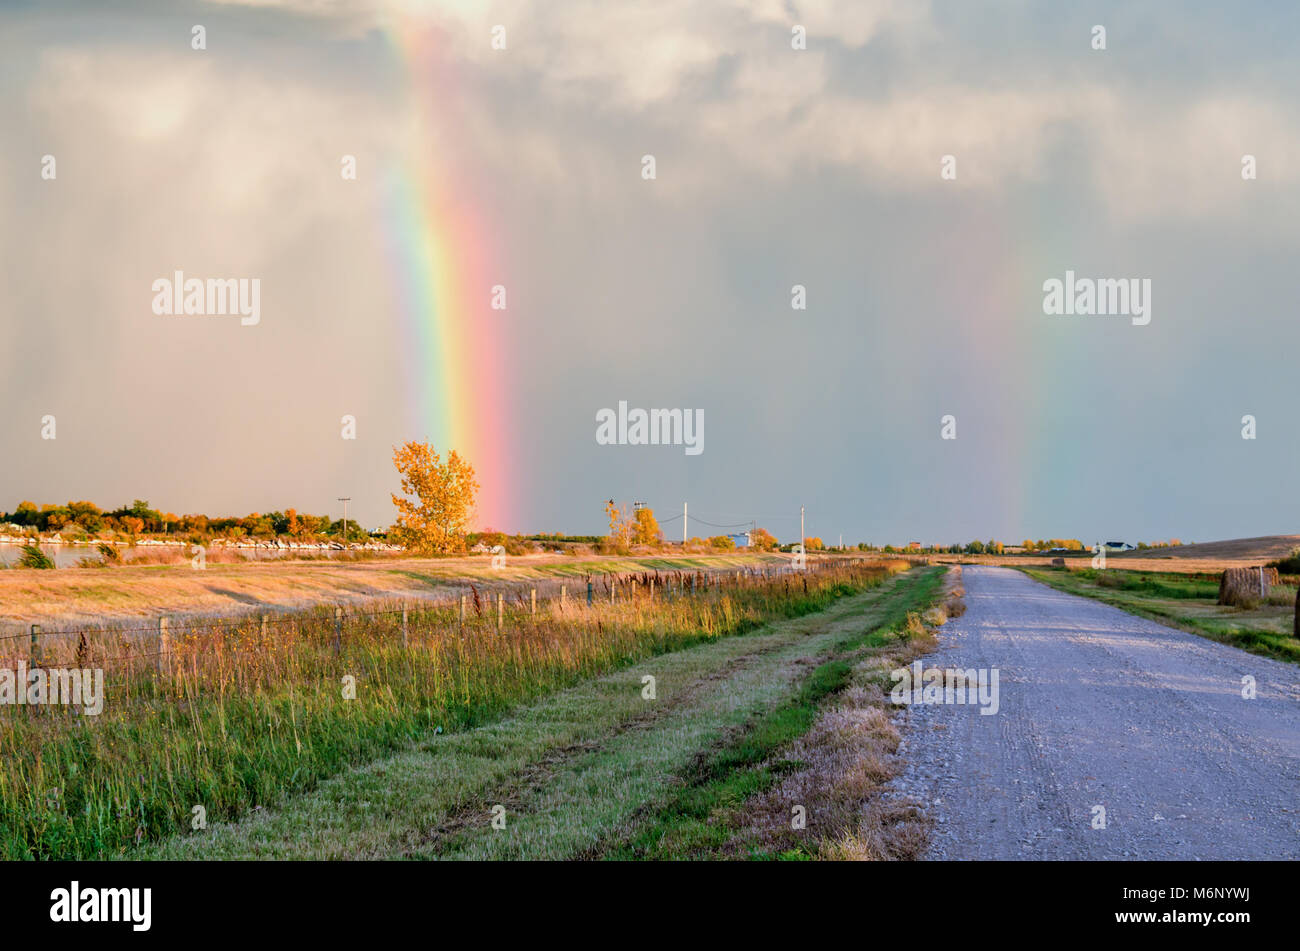 Una strada sterrata lungo il lago e i campi con haystacks alla fattoria, blu grigio nuvole e un multicolore doppio arcobaleno nel cielo. Foto Stock